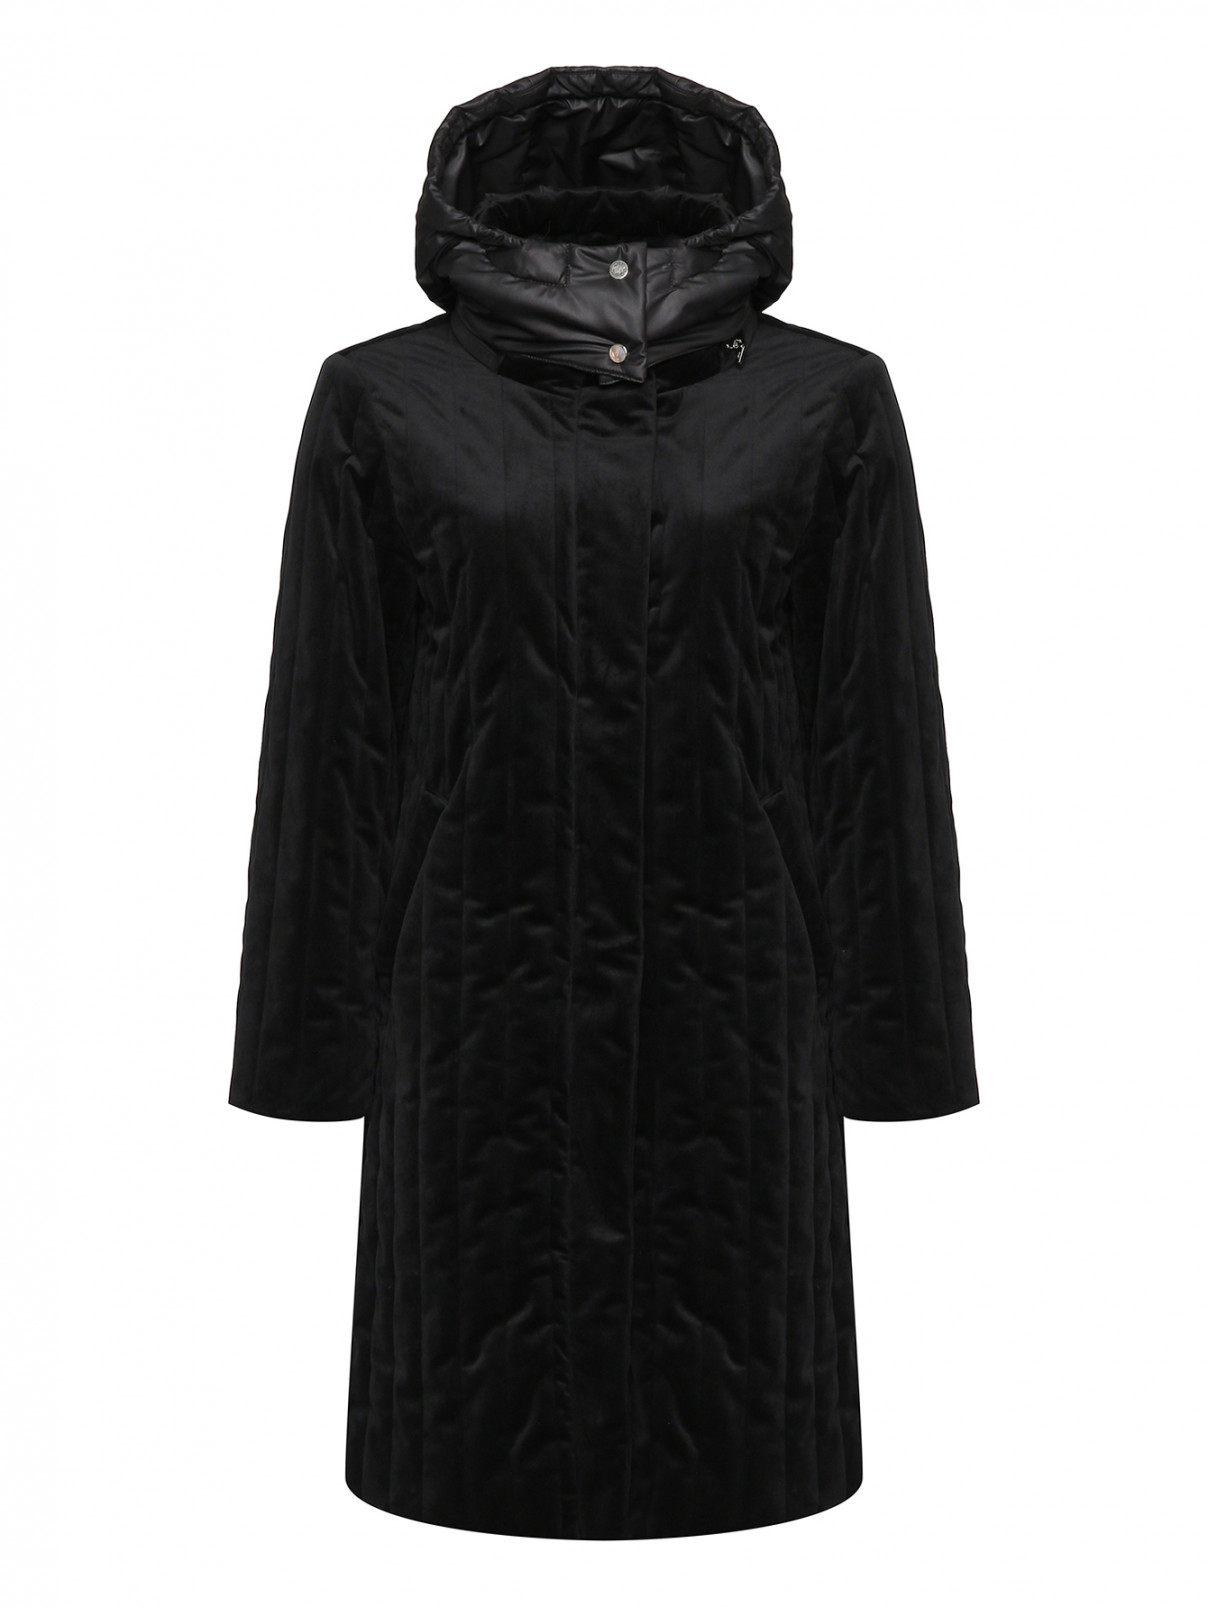 Стеганое пальто с капюшоном Marina Rinaldi  –  Общий вид  – Цвет:  Черный